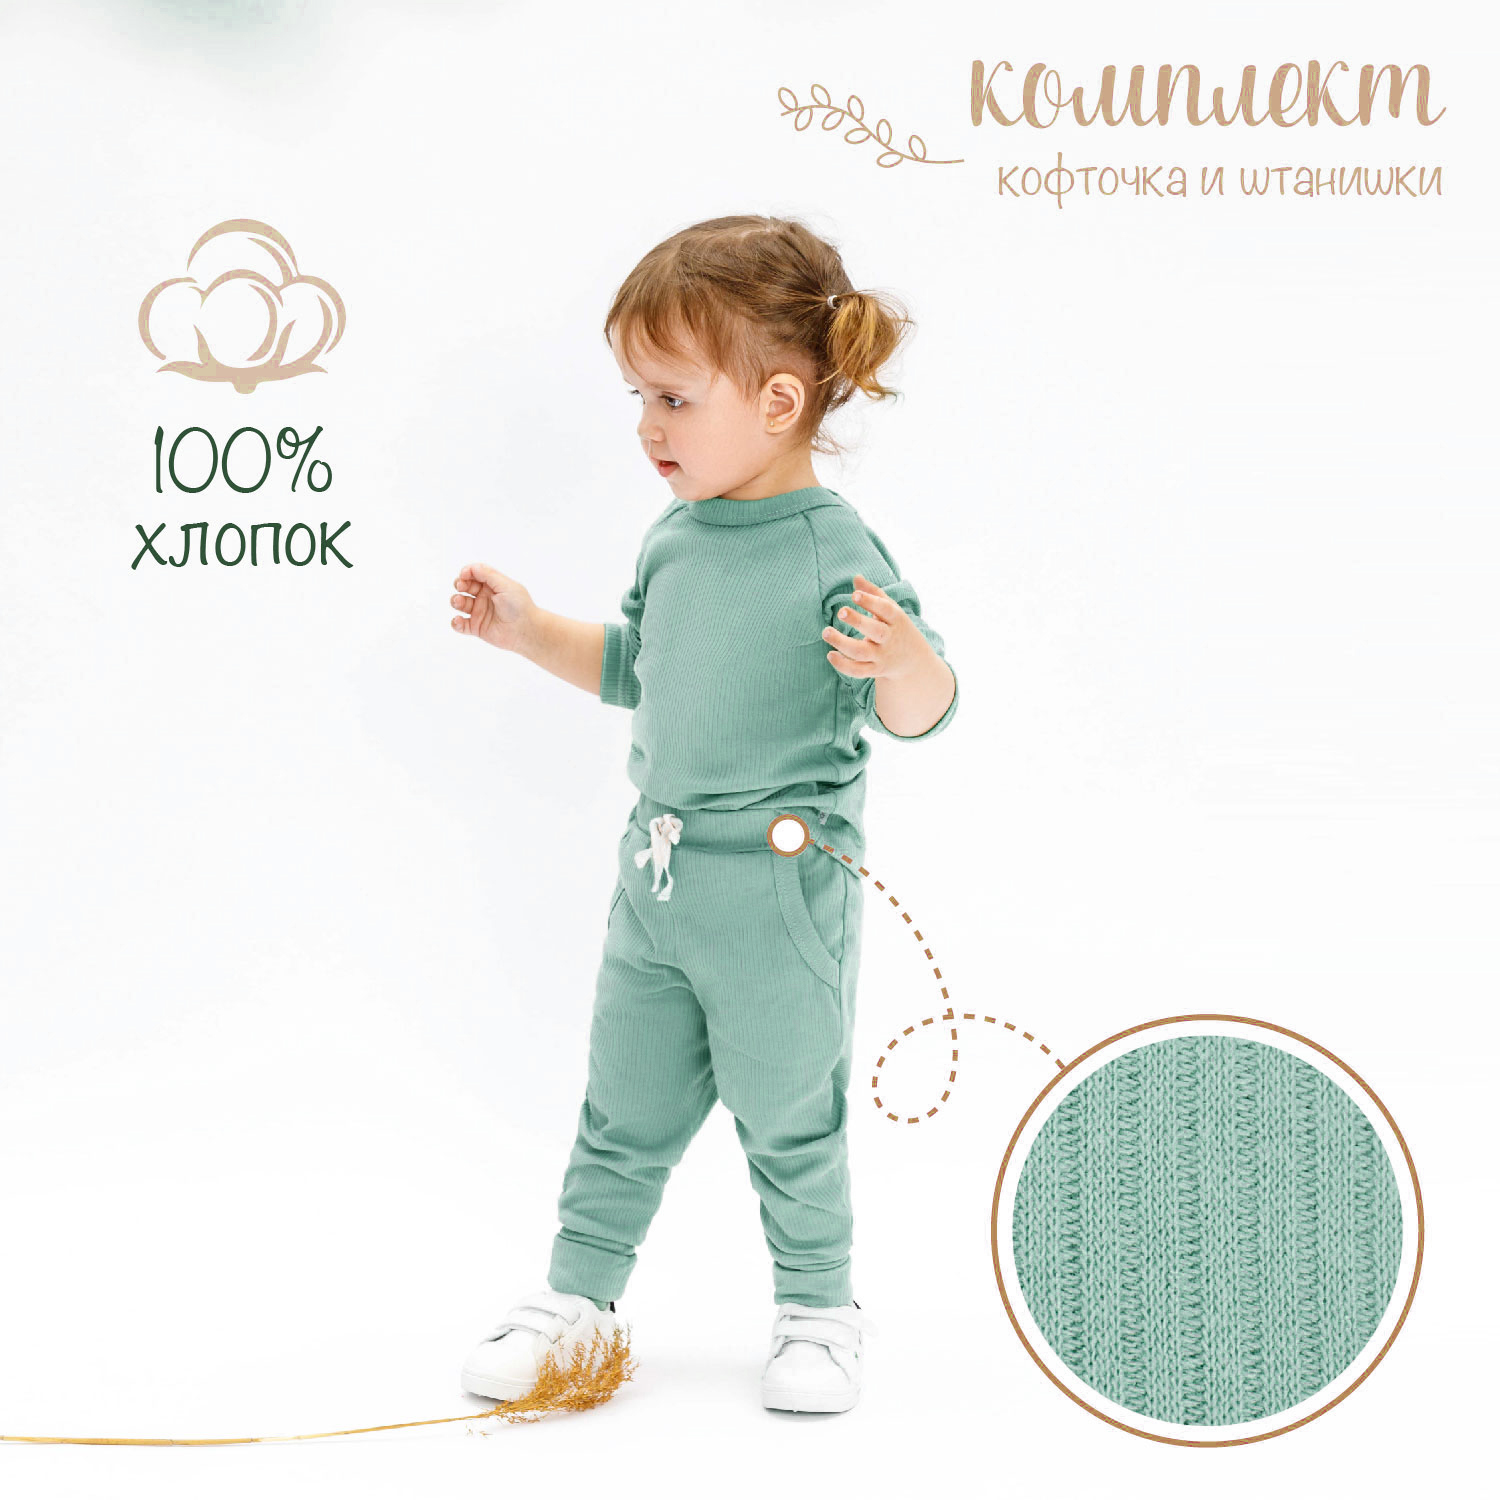 Кофточка и ползунки (штанишки) детские AMAROBABY Fashion, зеленый, размер 92 manymonths штанишки леггинсы детские